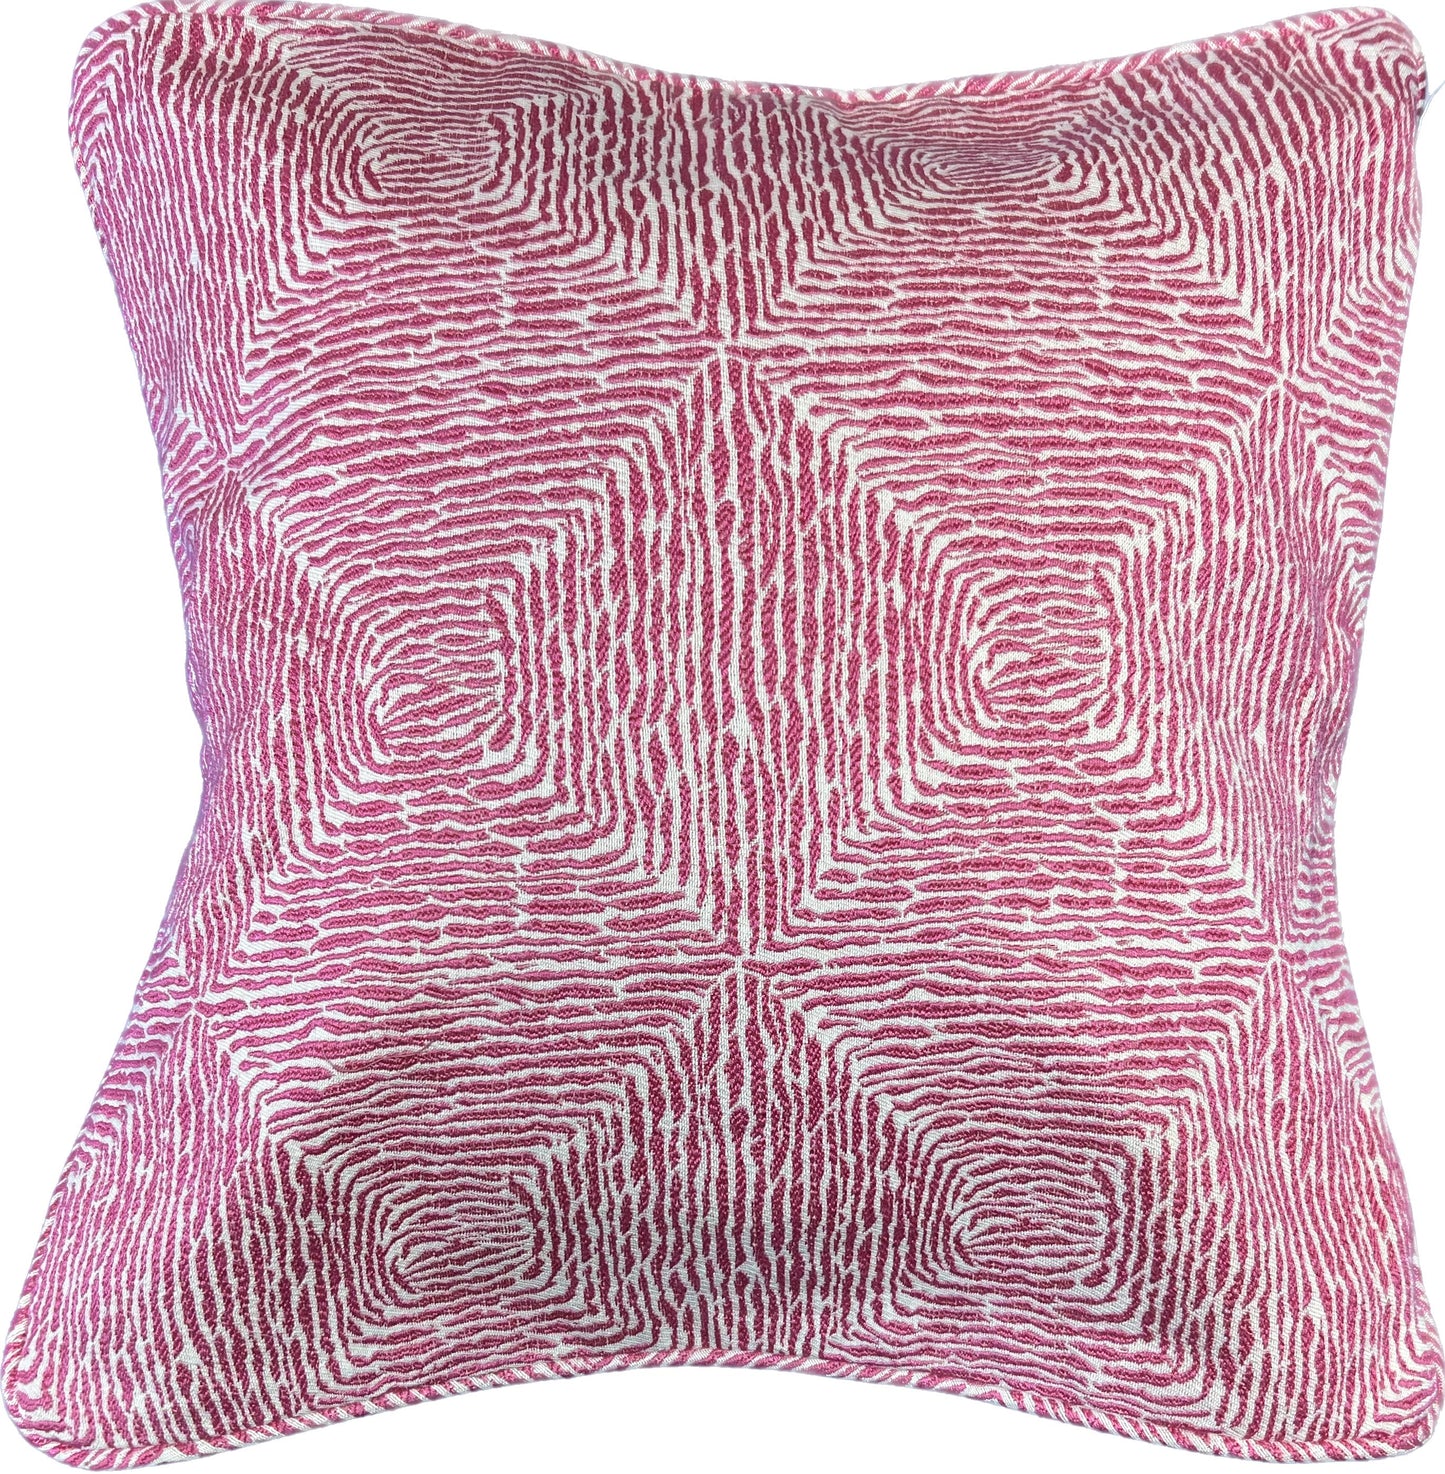 18"x18"  2-Sided Pillow Cover - Face: Animal Print / Back: Solid Velvet